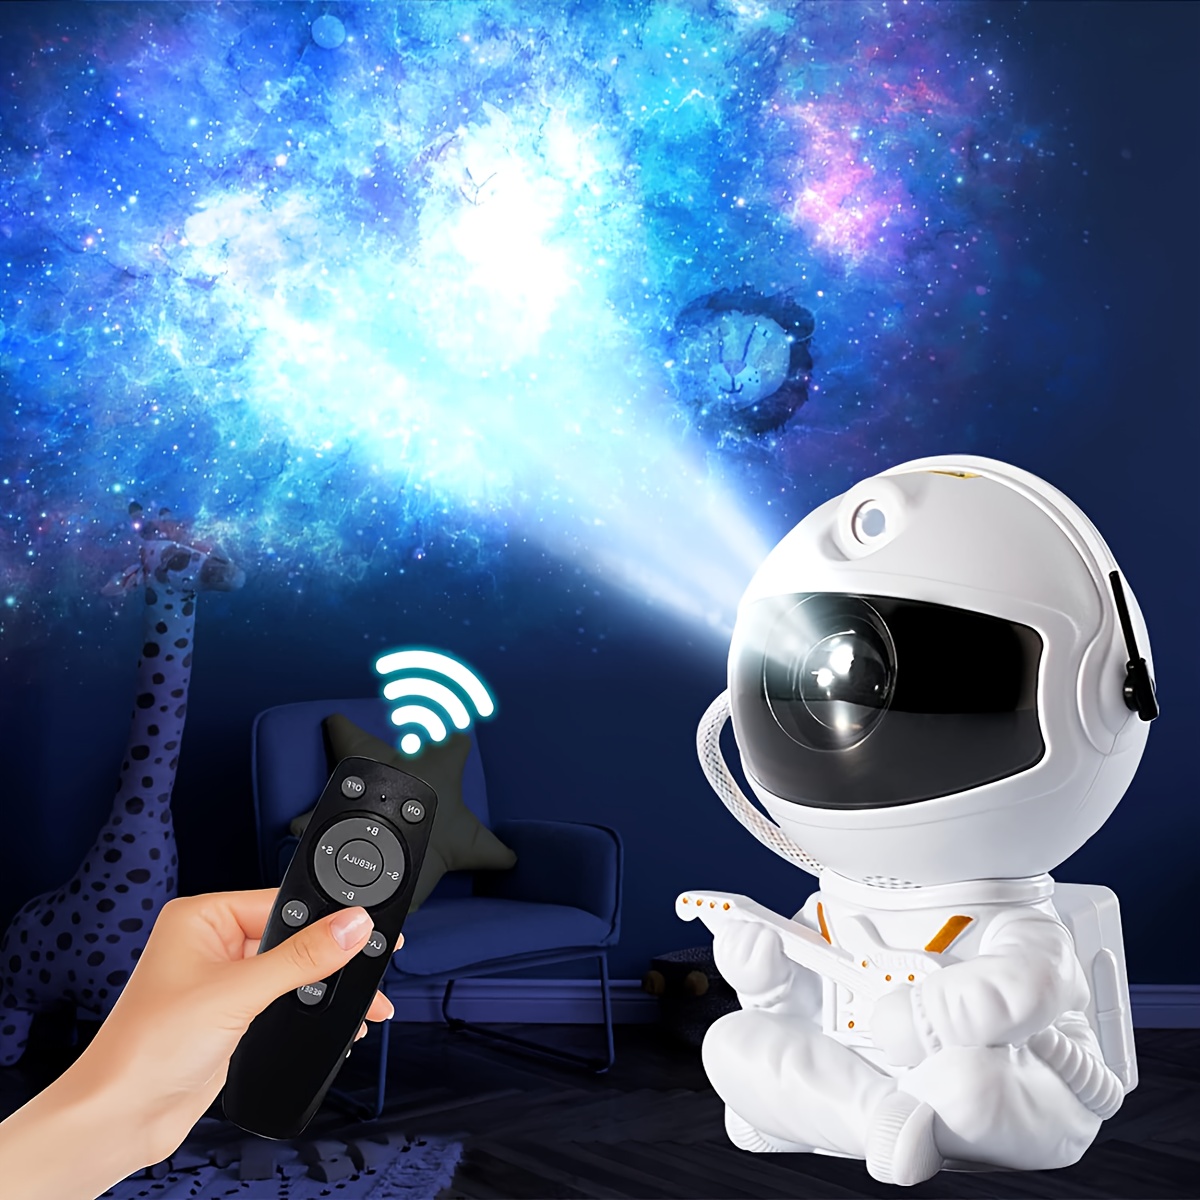 Astronaut Galaxy Projektor Sternennachtlicht Projektor, Astronaut Licht  Projektor mit Nebel, Timer und Fernbedienung, USB Powered 360° Einstellbar